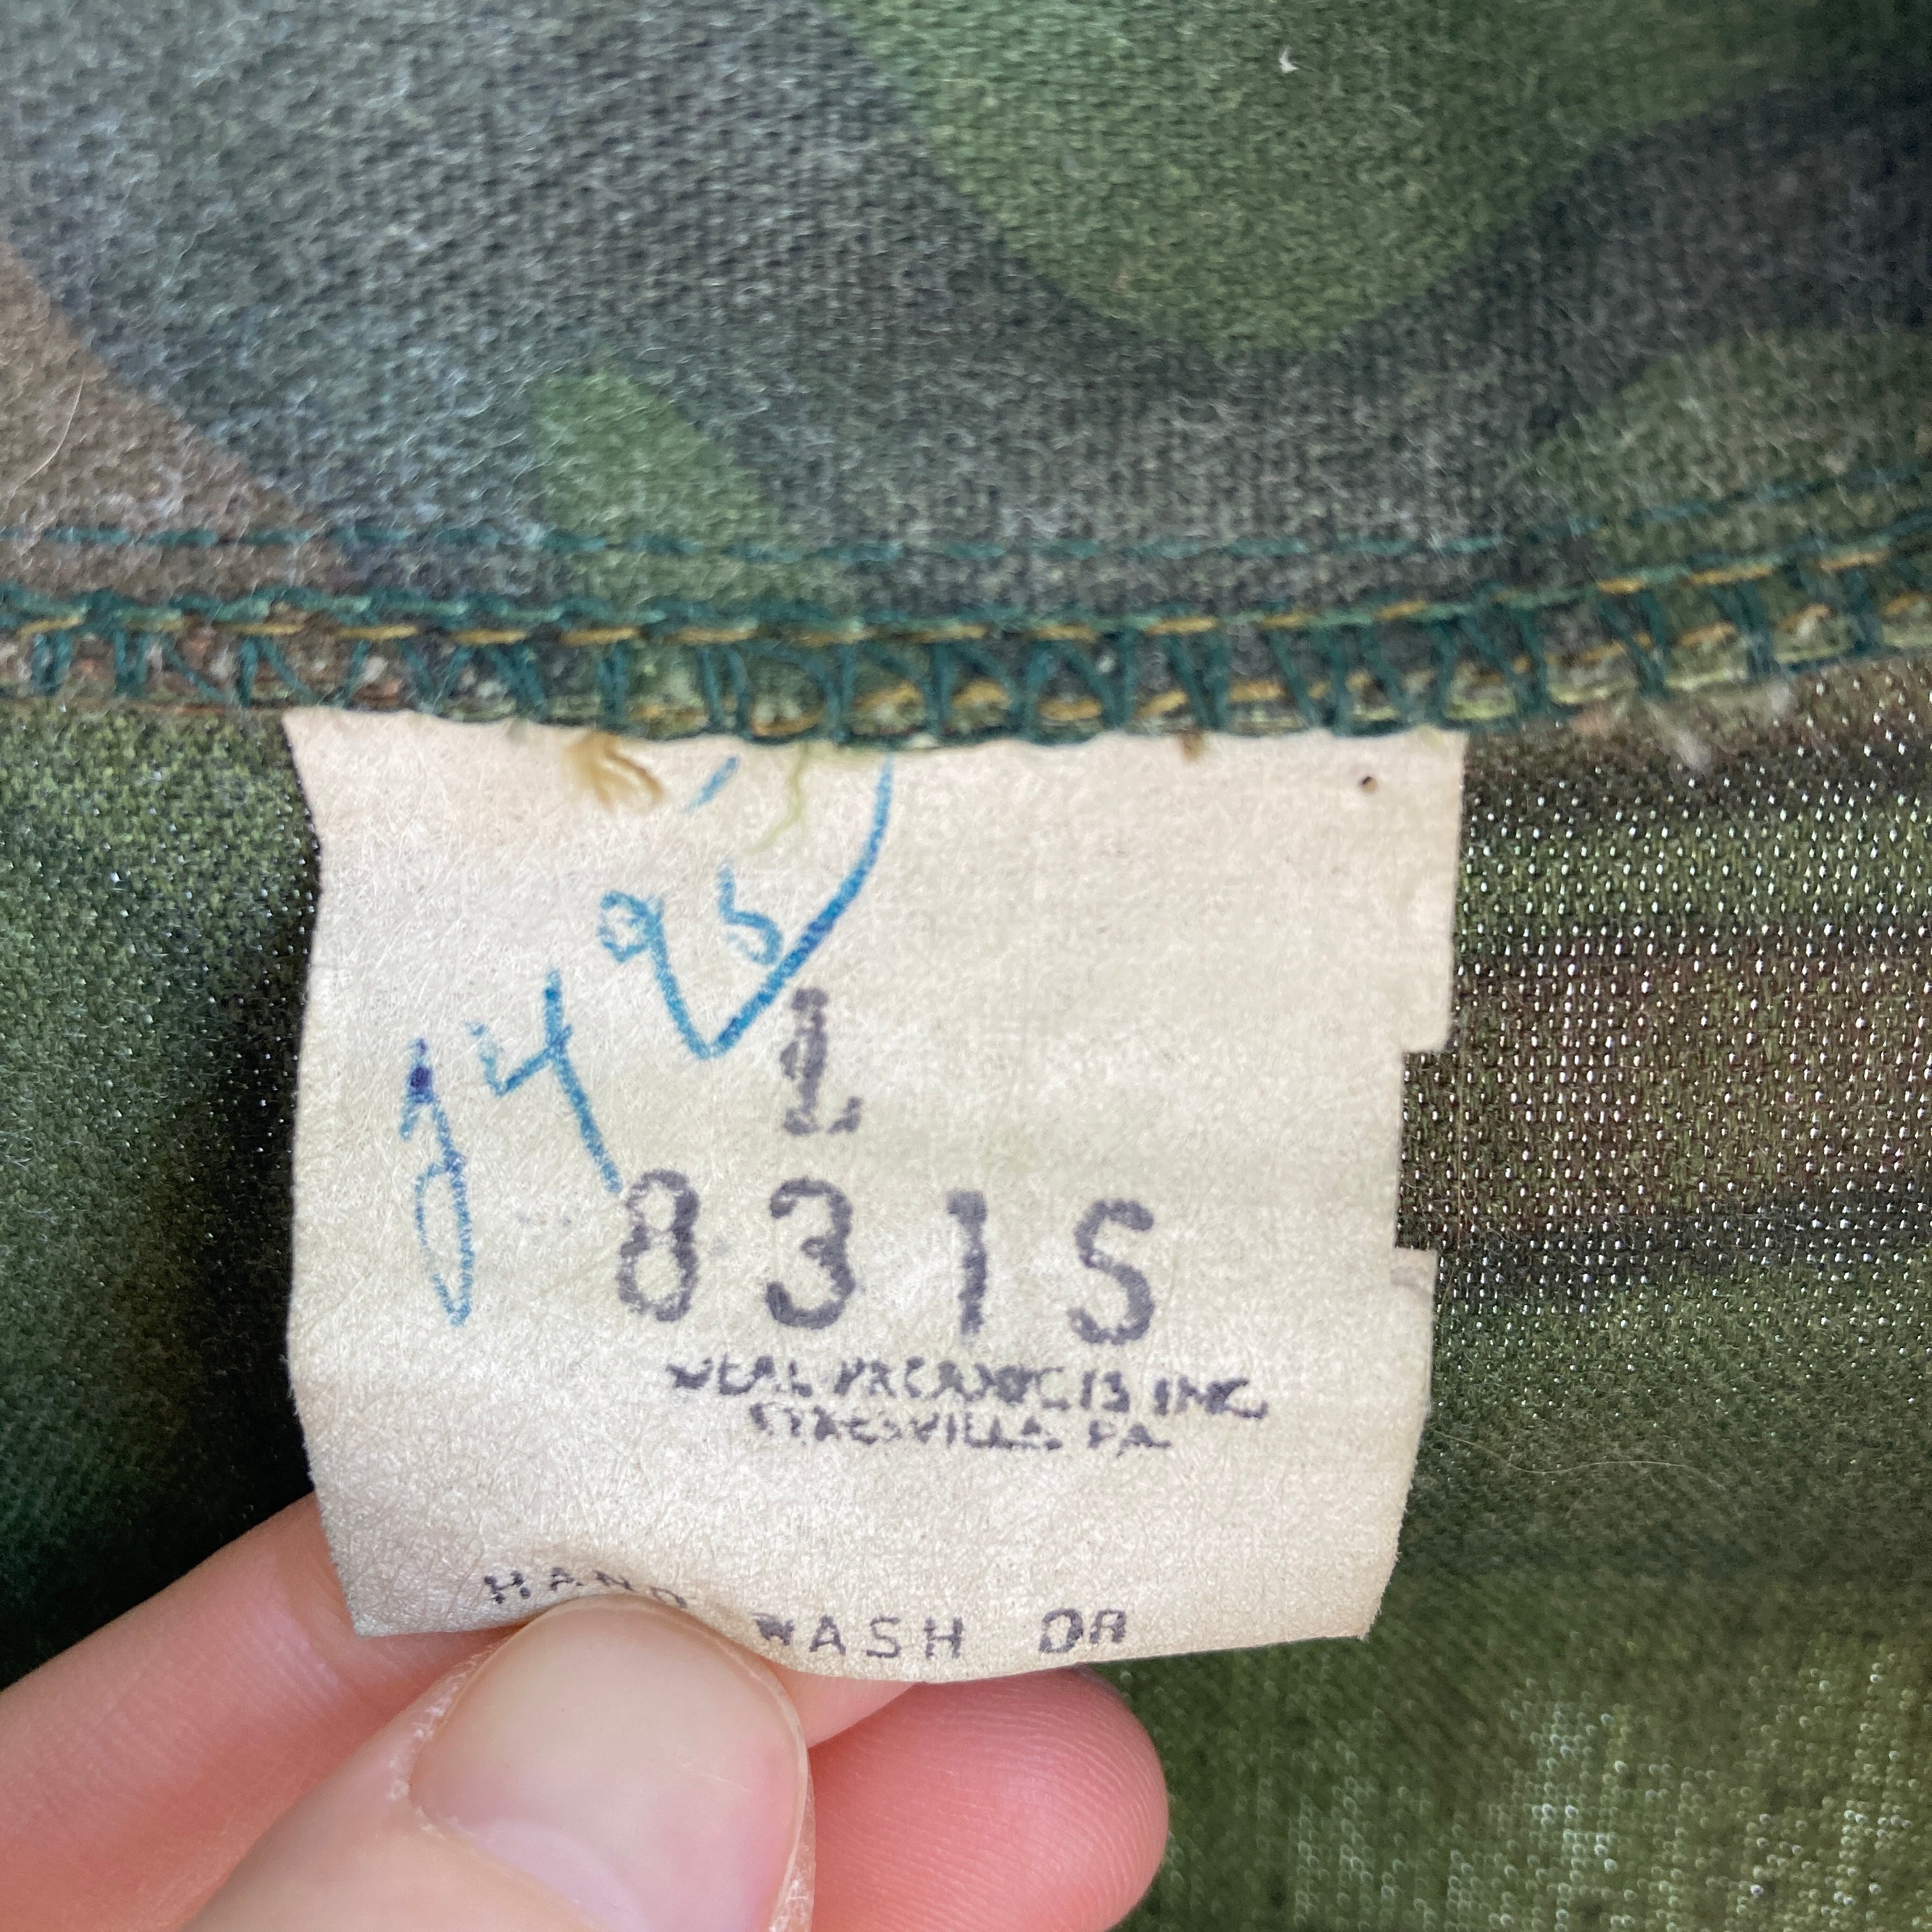 Manteau de corvée en coton camouflage des années 70 - L